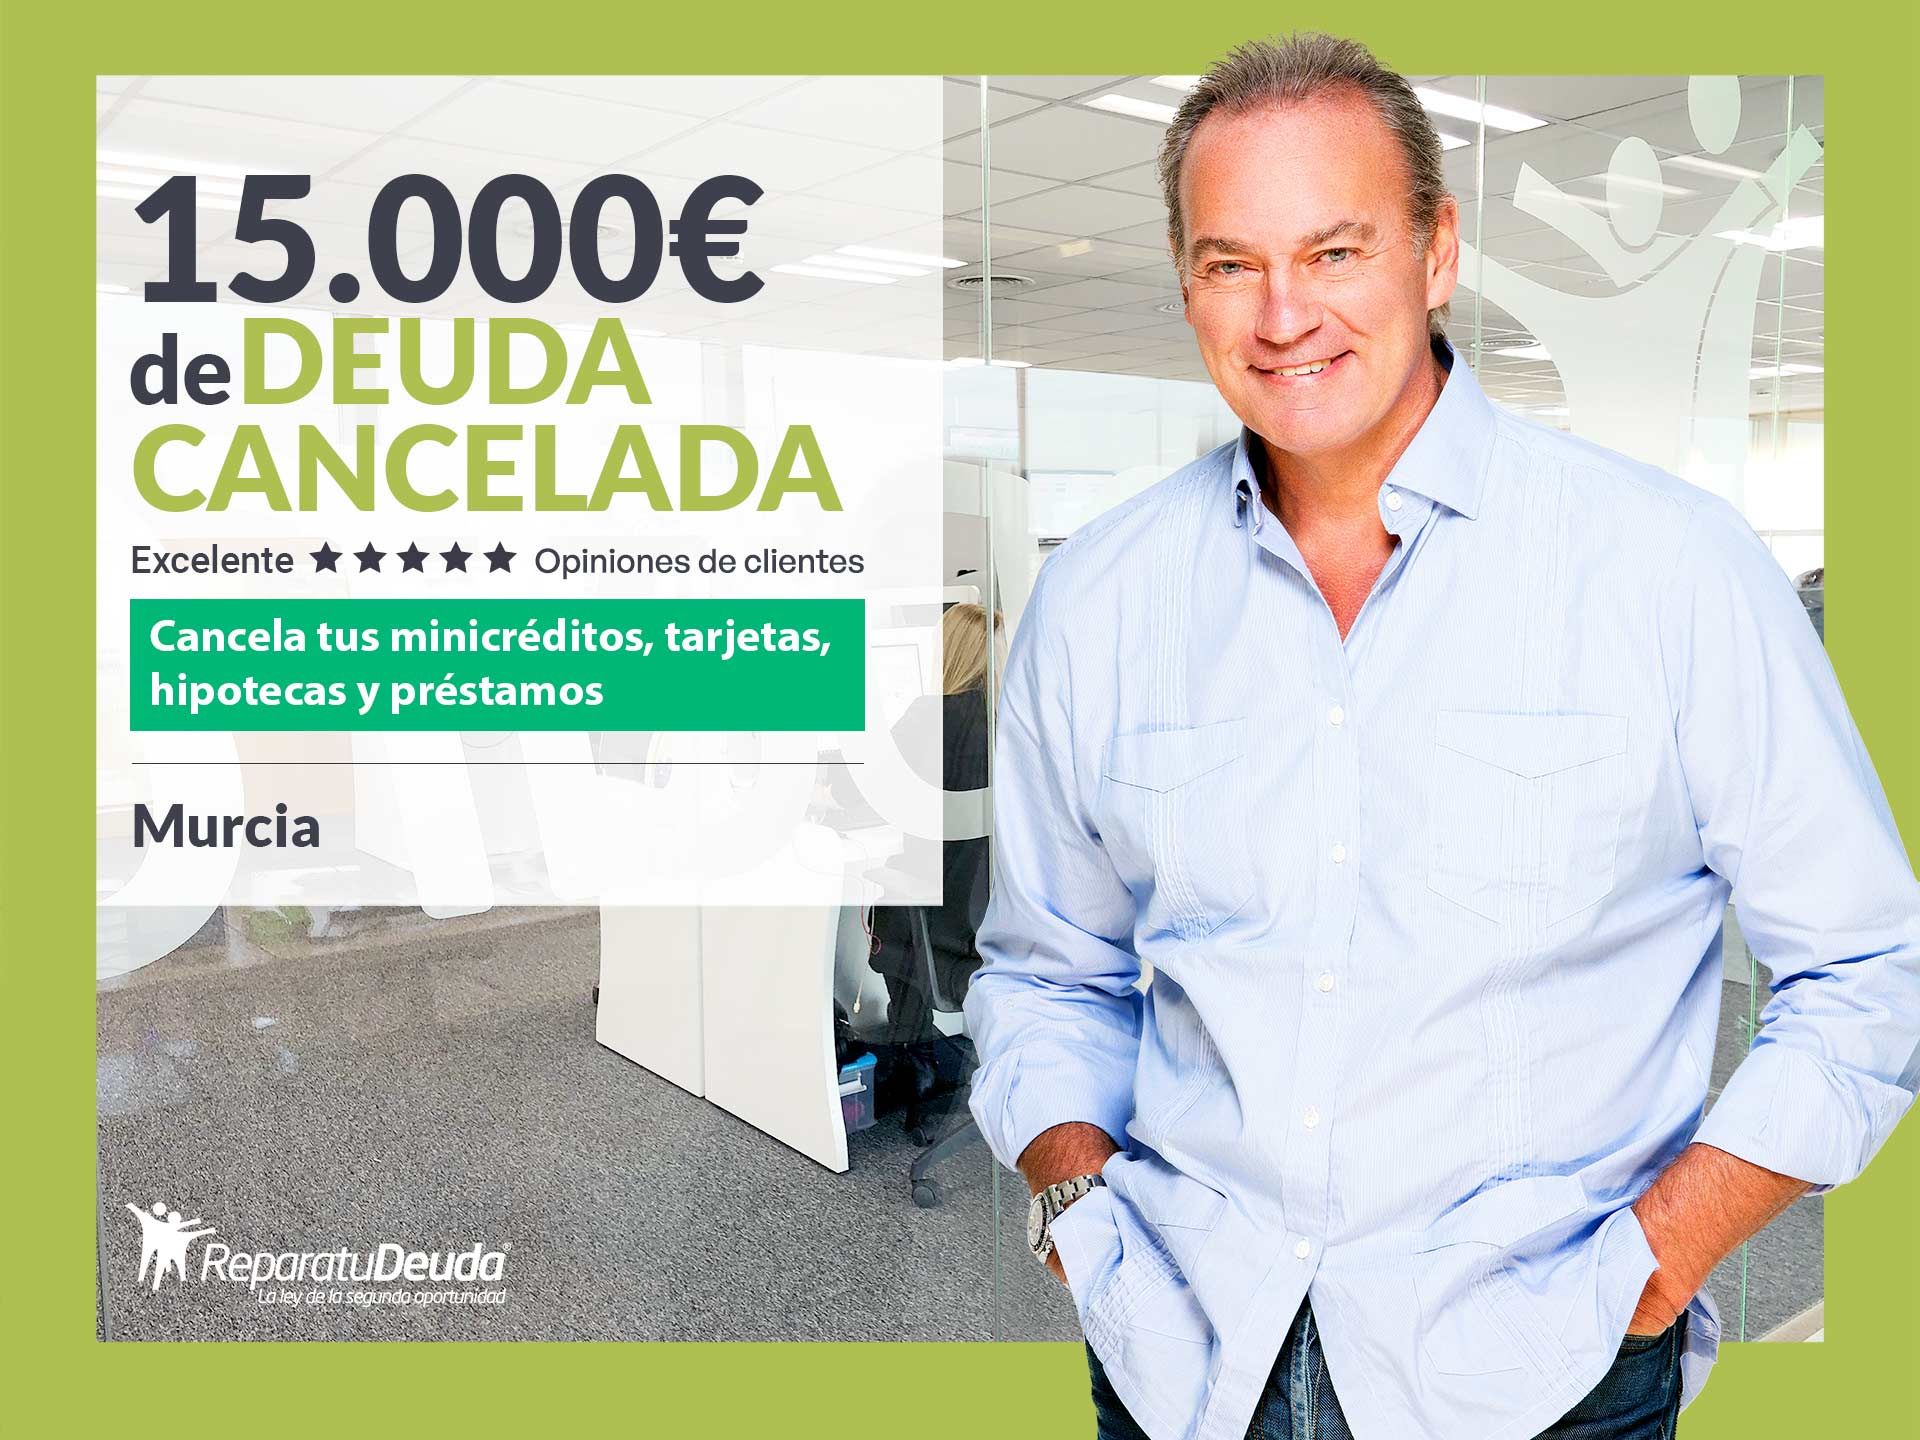 Repara tu Deuda Abogados cancela 15.000? en Murcia con la Ley de Segunda Oportunidad